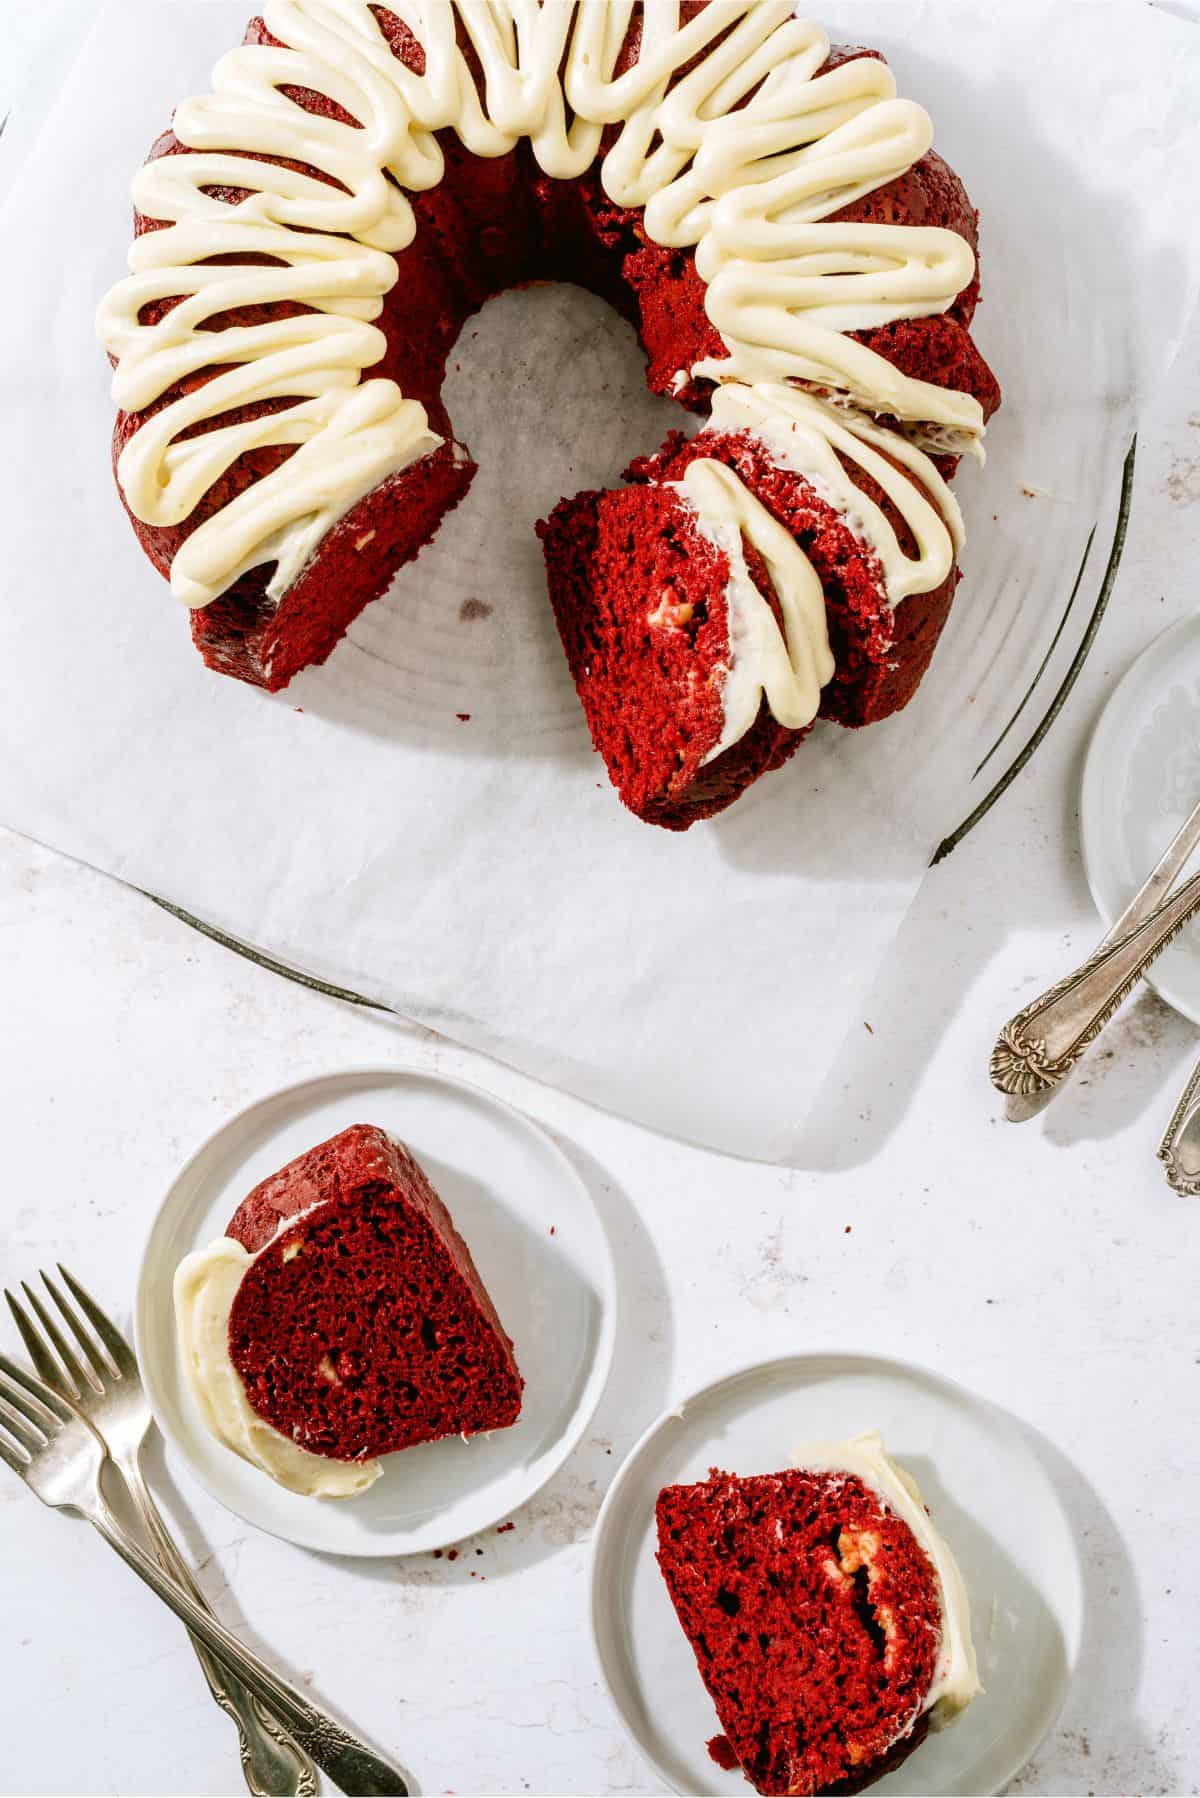 How to Make Red Velvet Bundt Cake in the Instant Pot